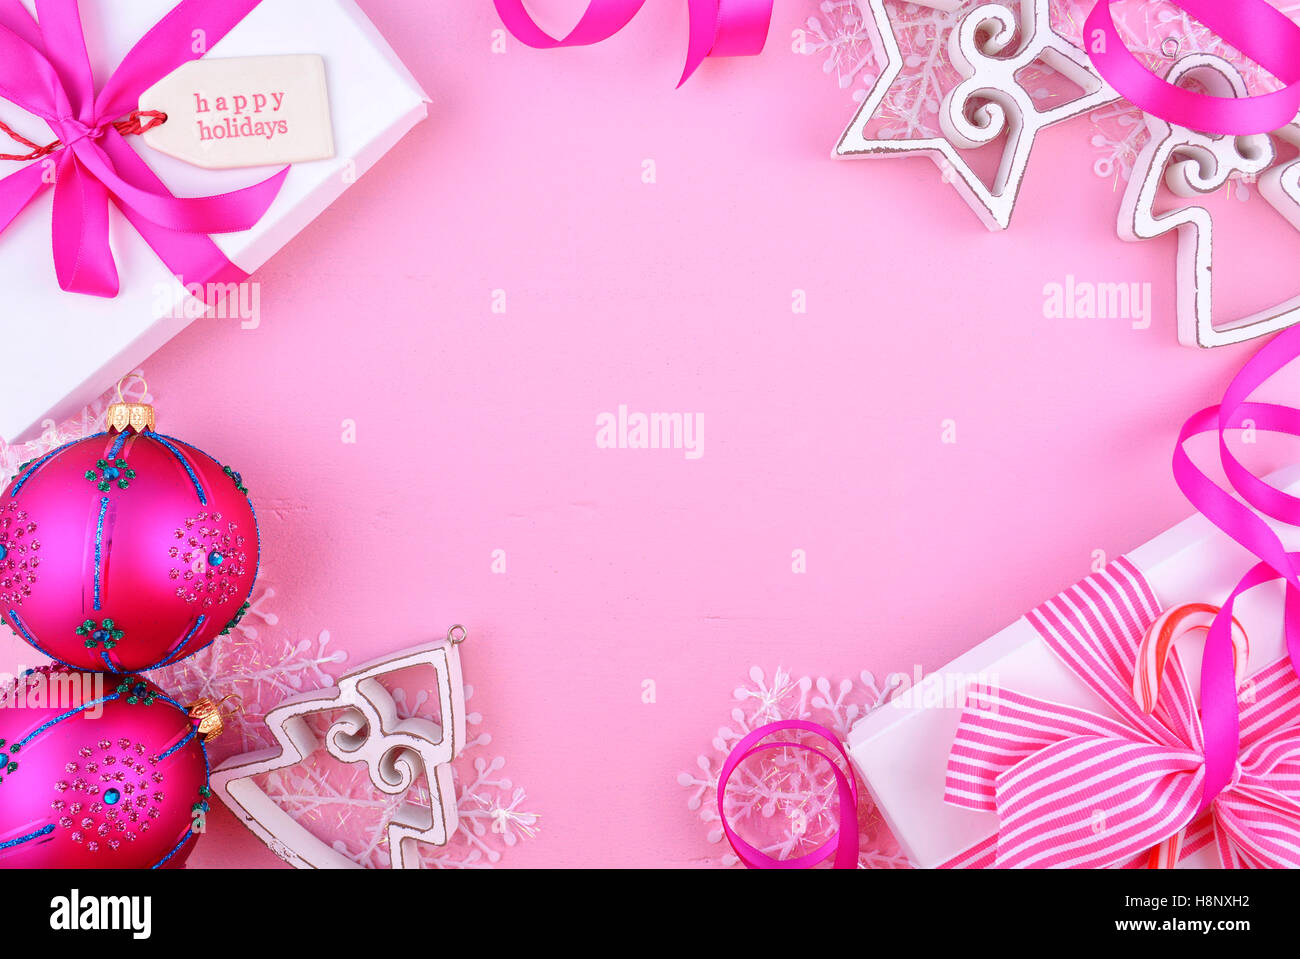 Đừng bỏ lỡ cơ hội để sở hữu những tấm hình màu hồng đẹp và độc đáo với hình nền Pink Christmas background stock photography. Với chất lượng hình ảnh tuyệt vời, bạn có thể sáng tạo ra những trang trí độc đáo cho lễ Giáng sinh của mình.